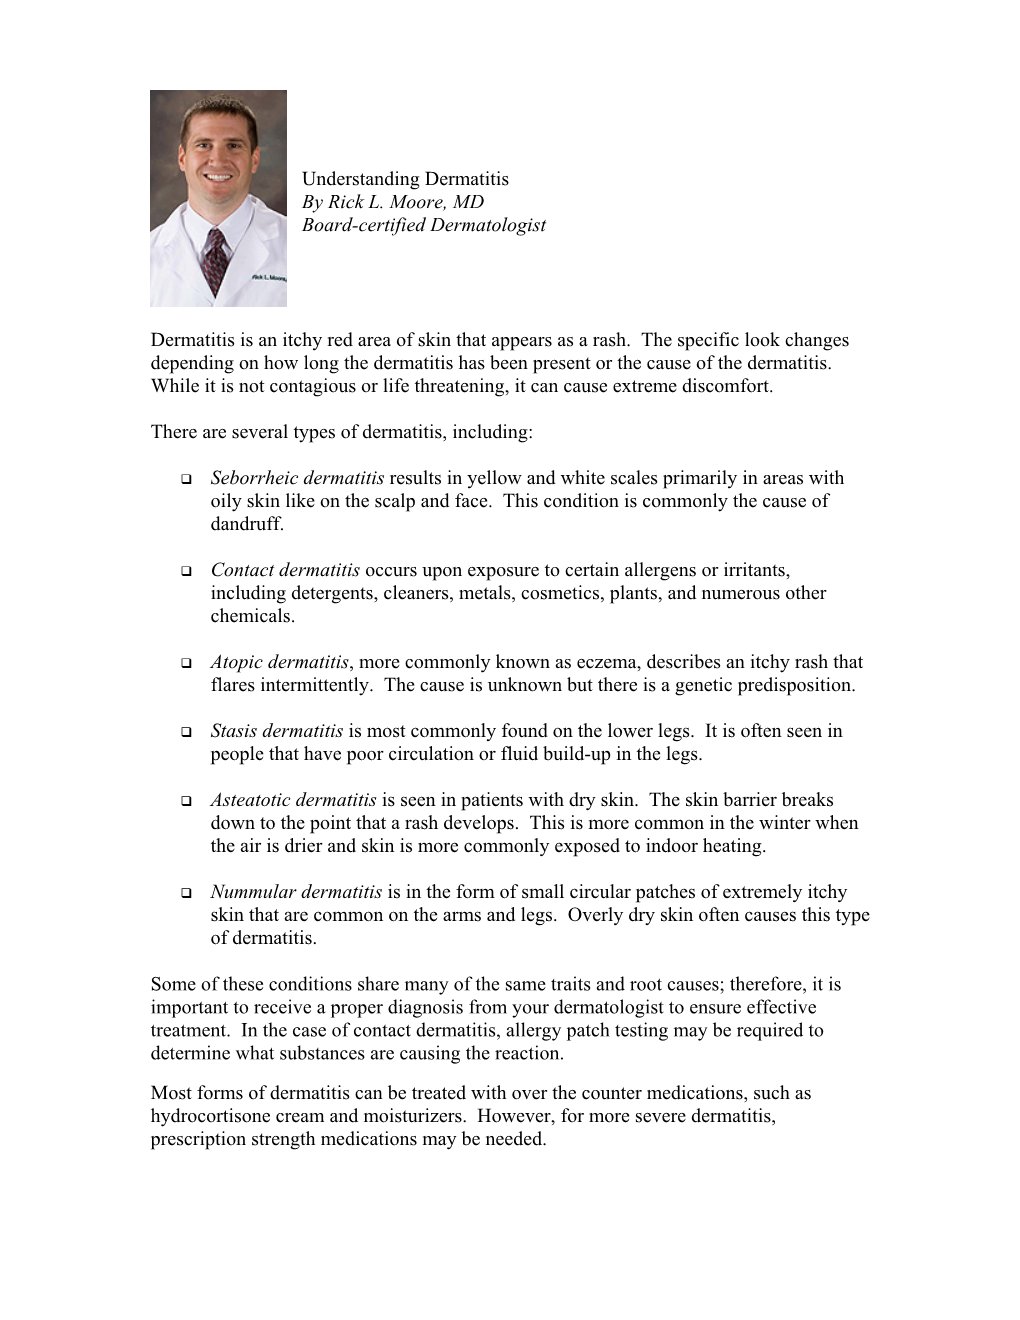 Understanding Dermatitis by Rick L. Moore, MD Board-Certified Dermatologist